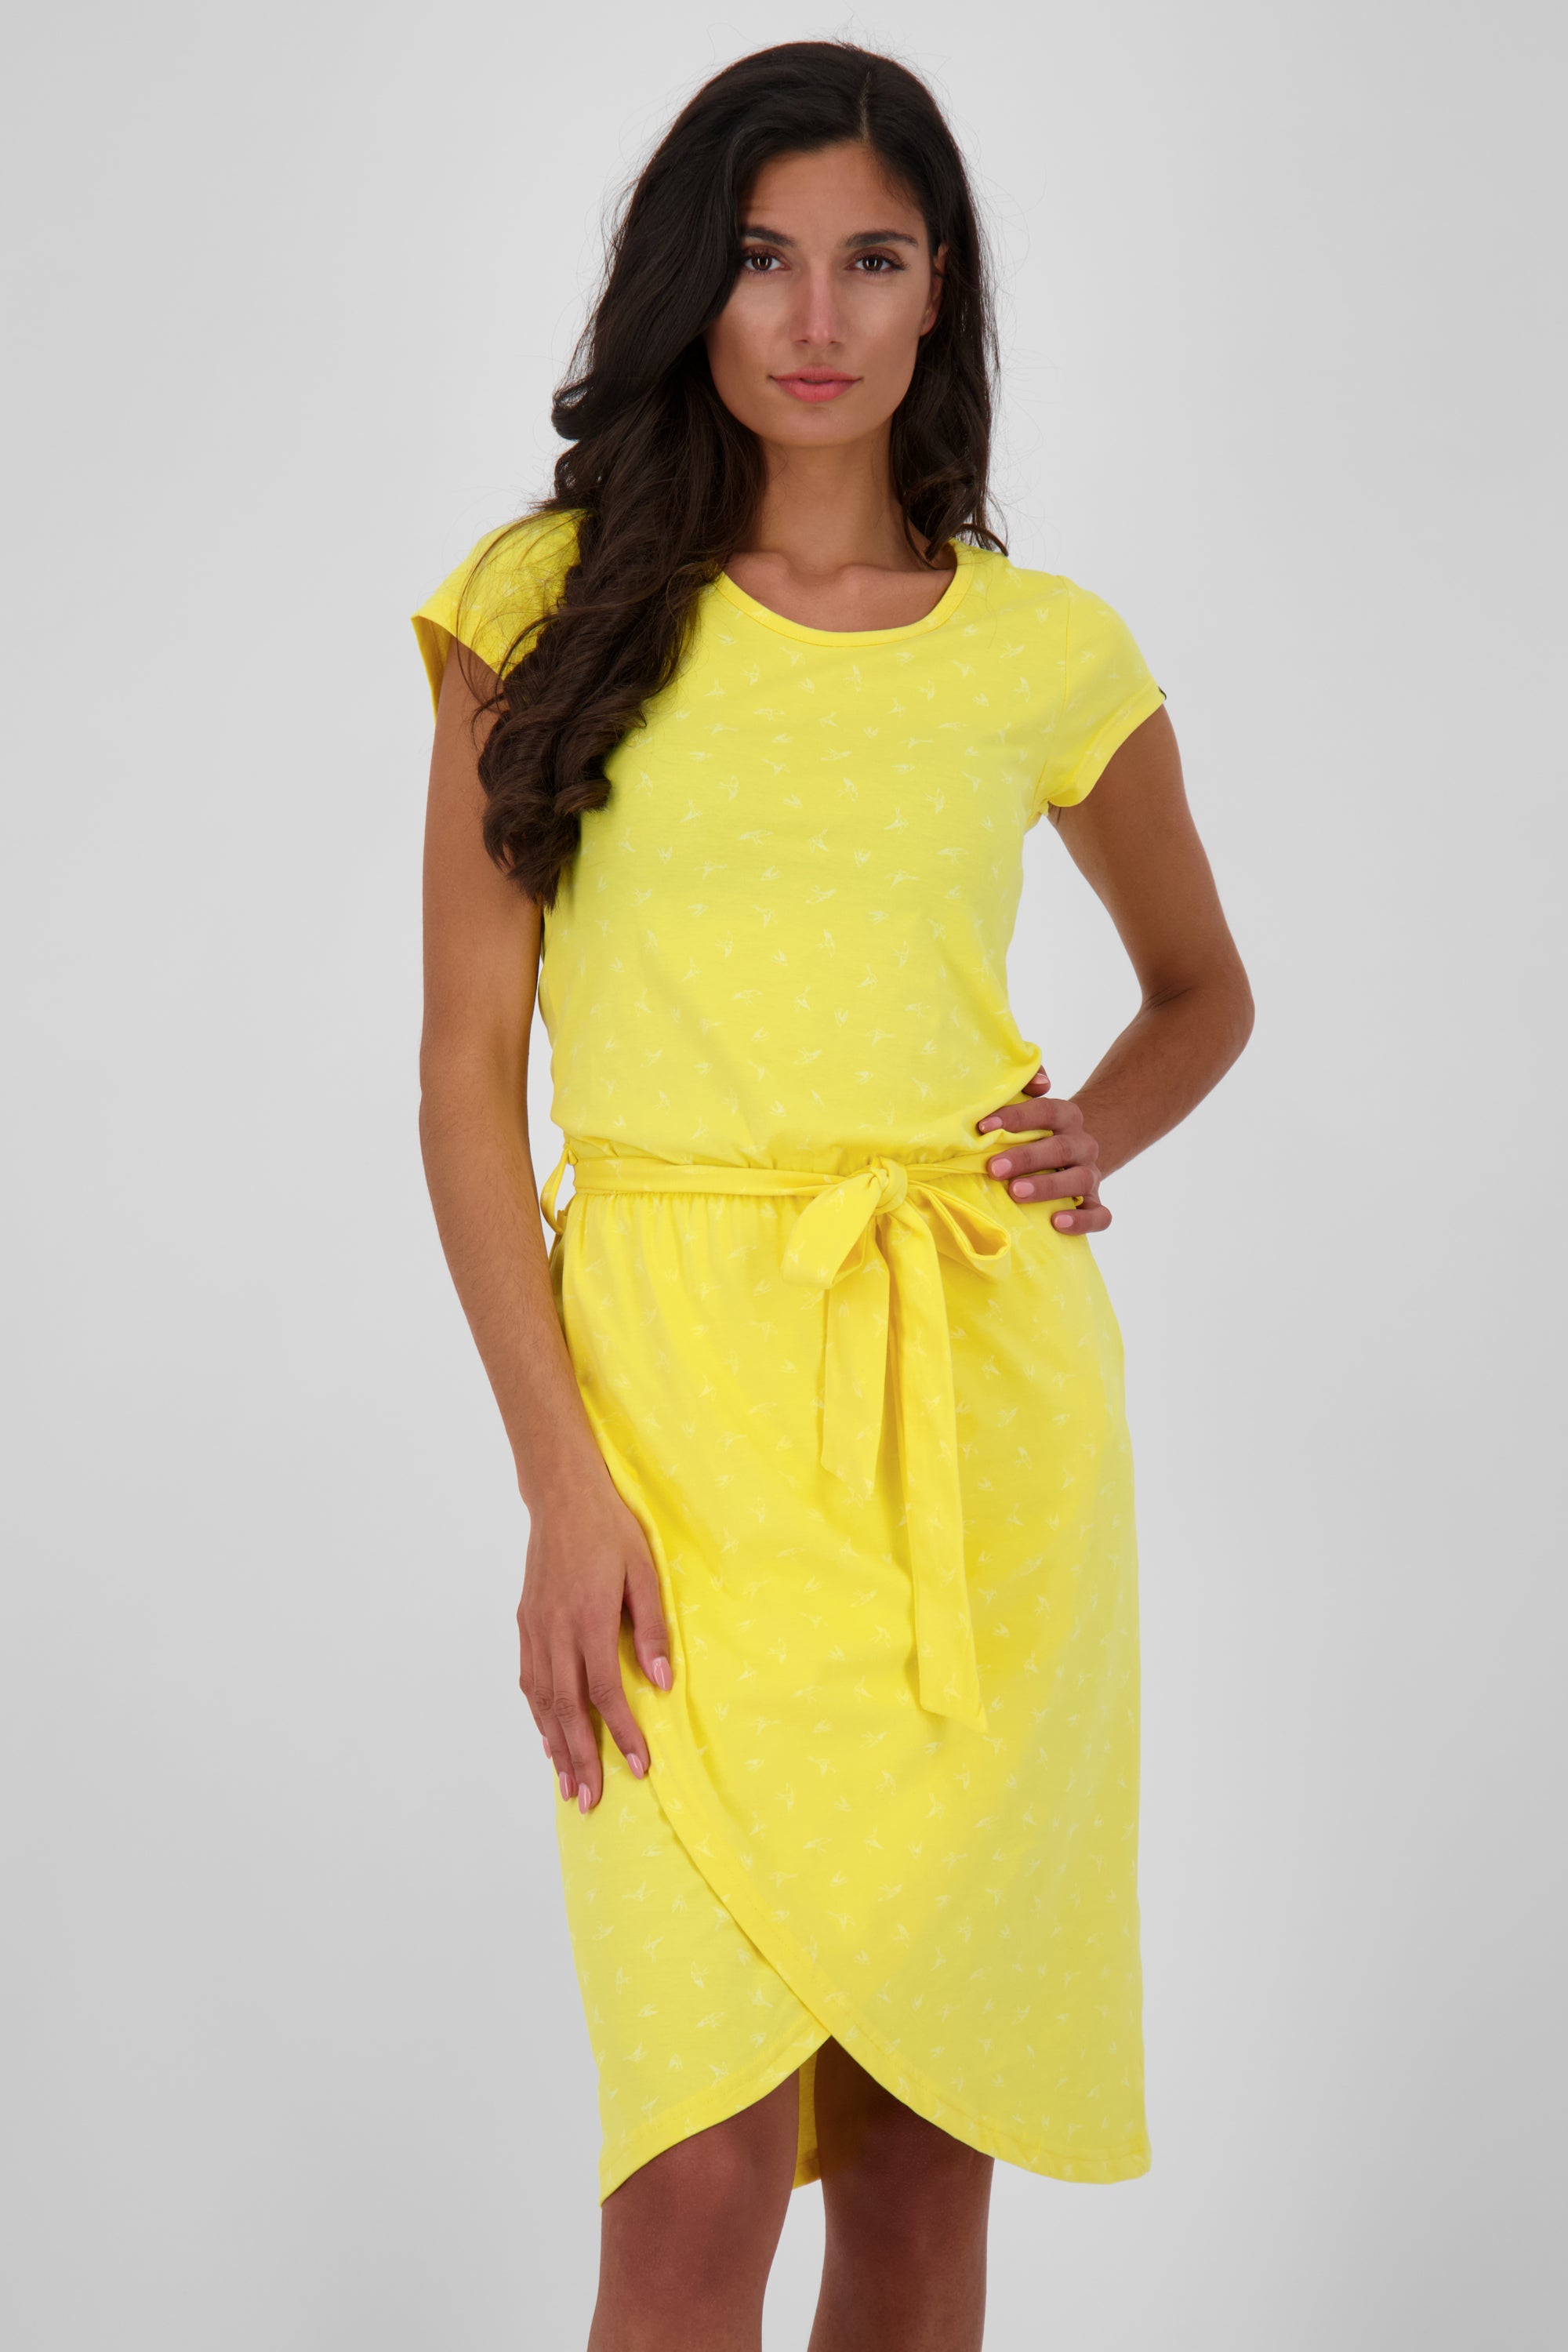 TheaAK Damenkleid mit Allover-Print für den perfekten Sommer-Look Gelb